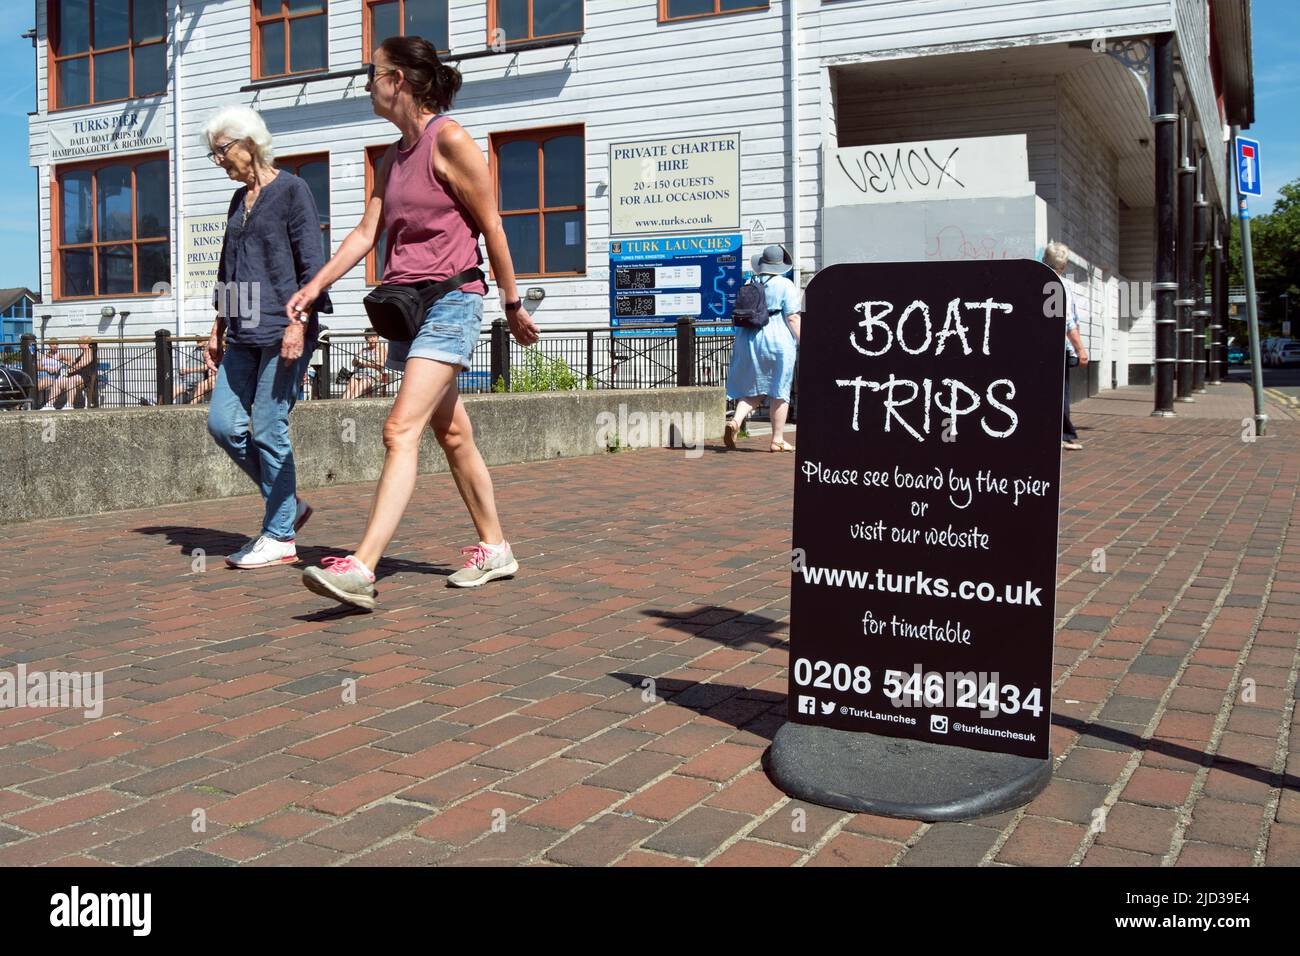 dos mujeres caminan por un cartel para viajes en barco, dirigido por una compañía llamada turks, en kingston upon thames, surrey, inglaterra Foto de stock